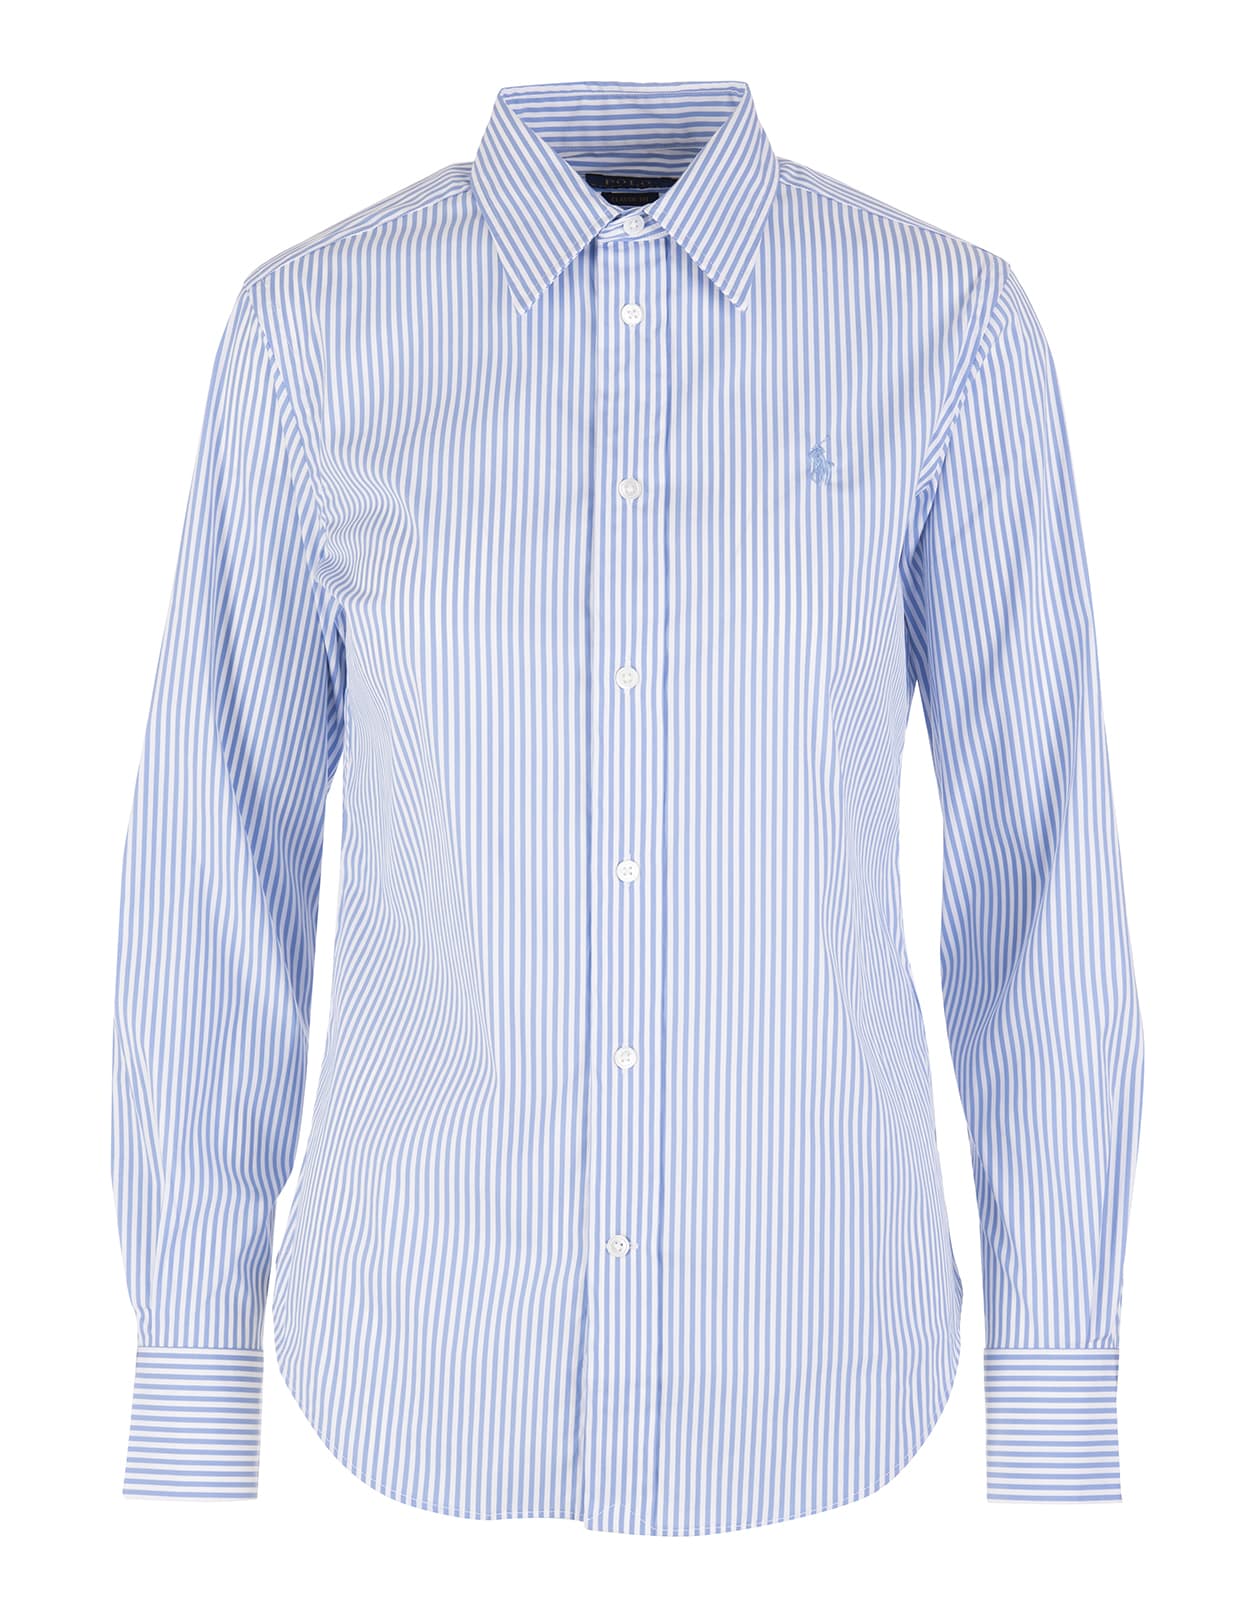 Ralph Lauren Woman Classic Fit Light Blue Striped Cotton Shirt